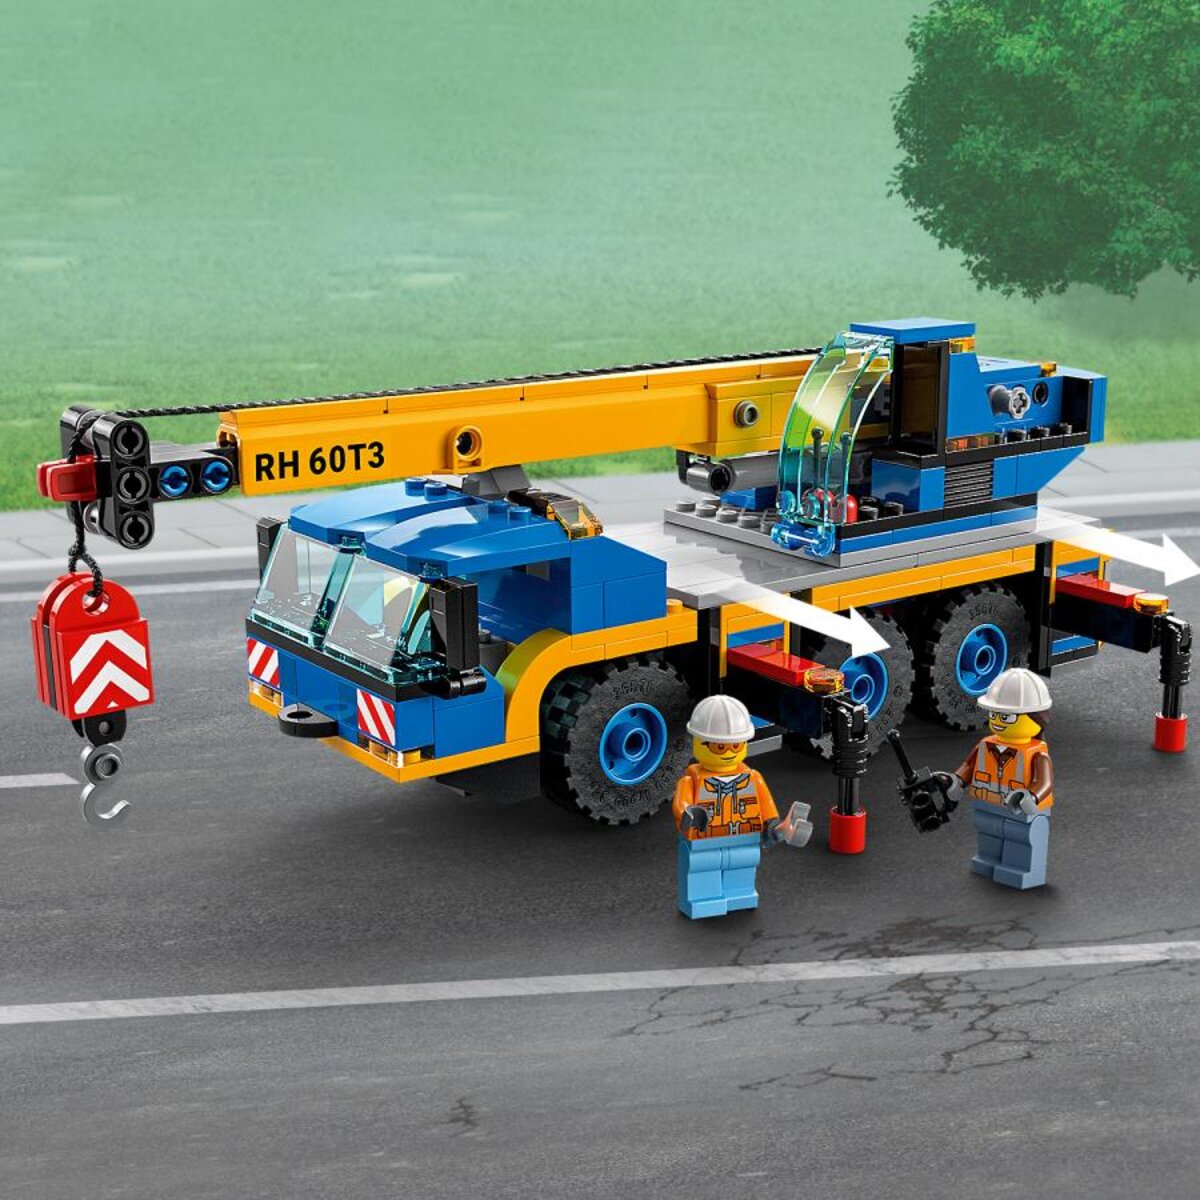 La grue mobile - LEGO® City 60324 - Dès 7 ans